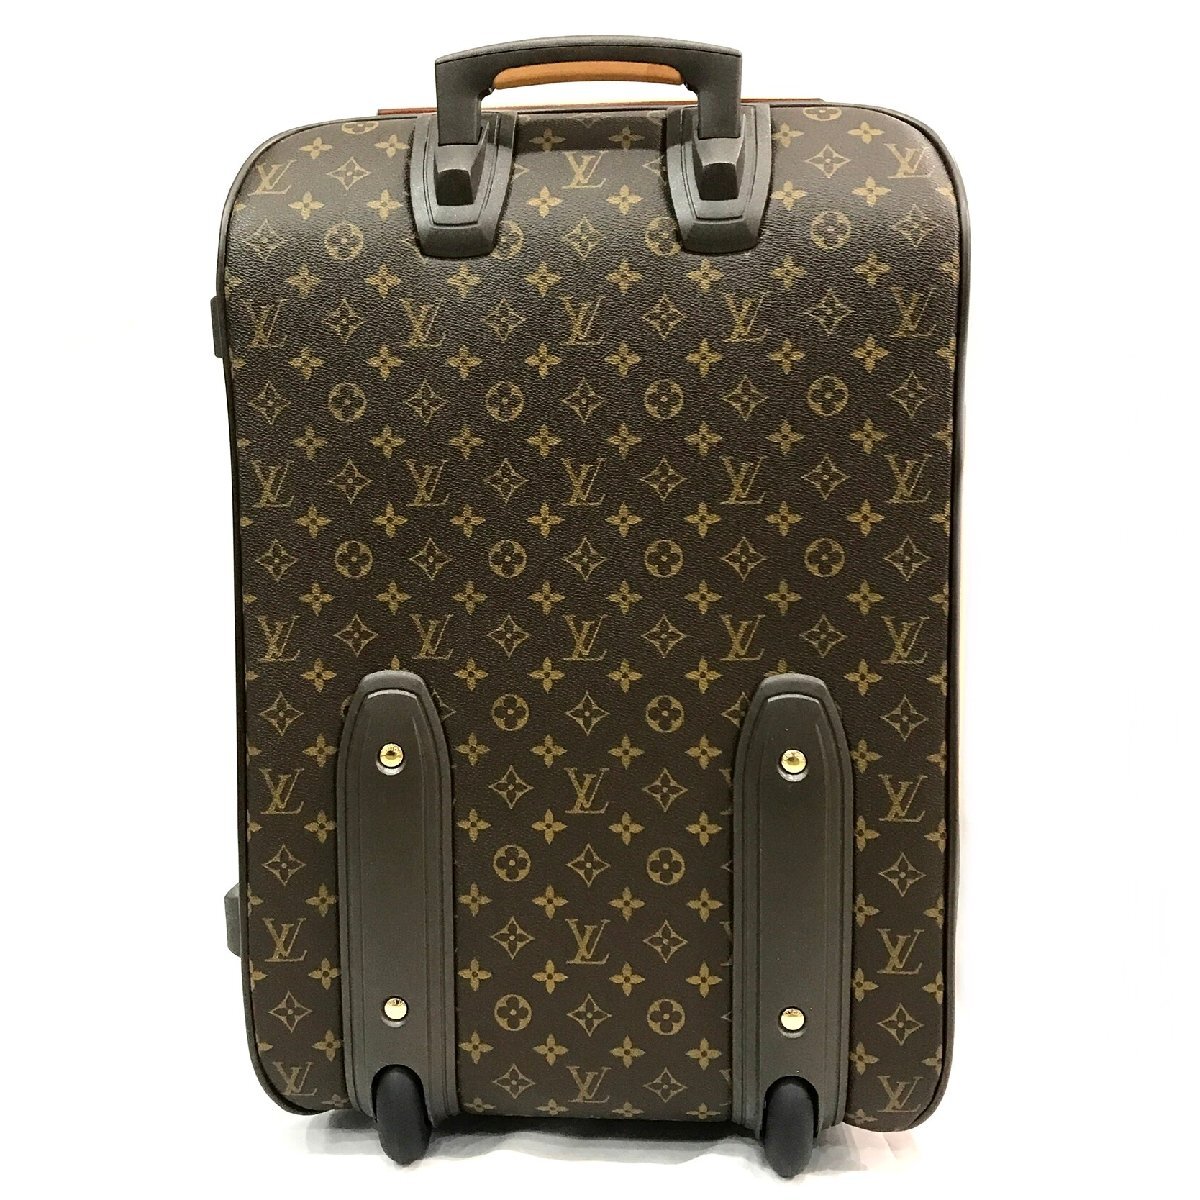 LOUIS VUITON ルイヴィトン モノグラム ペガス50 キャリーケース スーツケース 旅行鞄 ガーメントケース付き 美品 k711_画像2